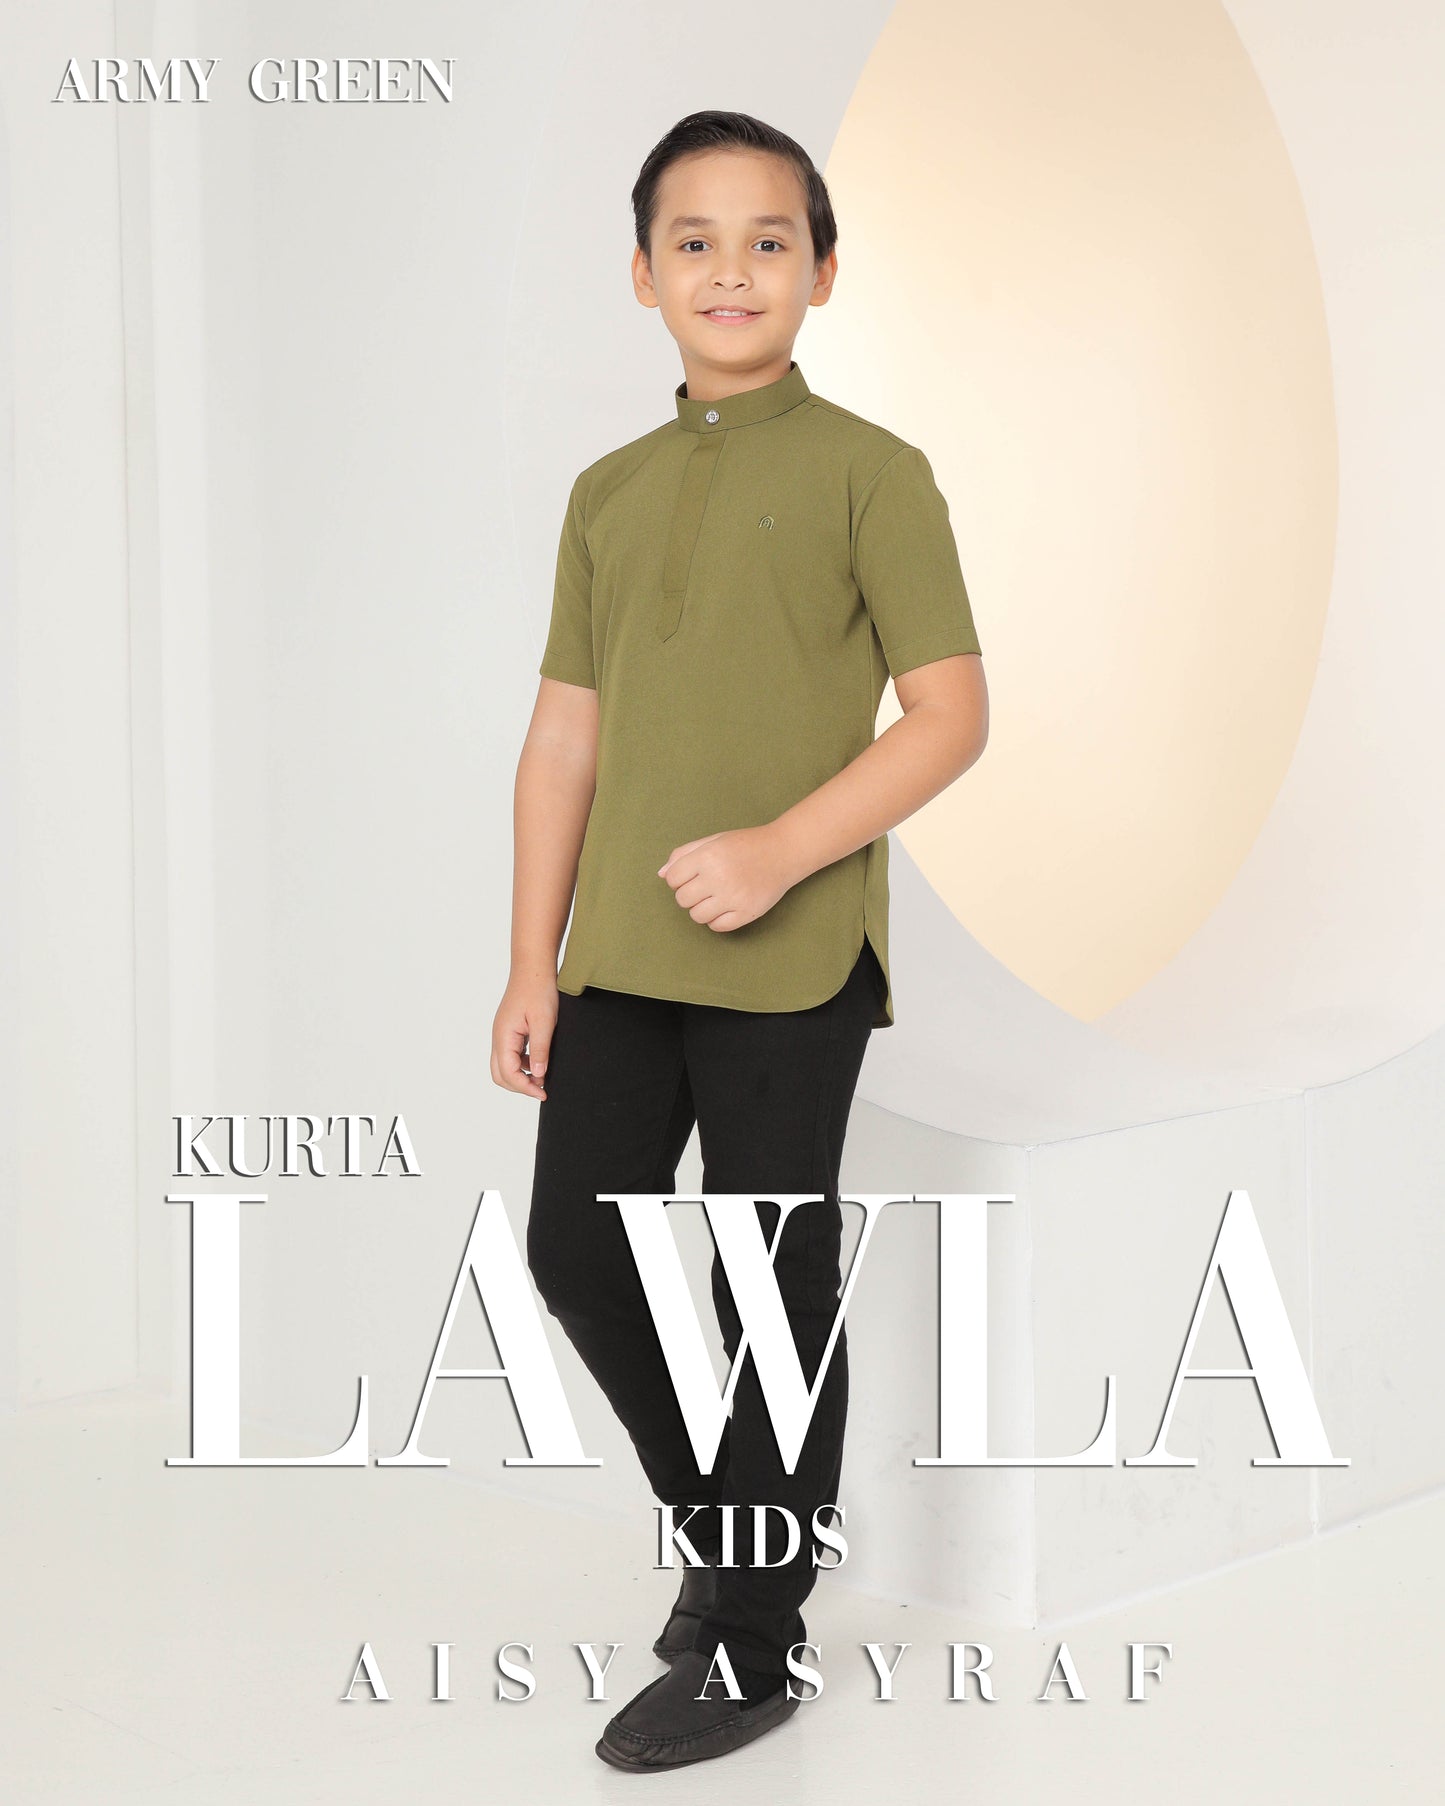 Kurta Lawla Kids - Army Green